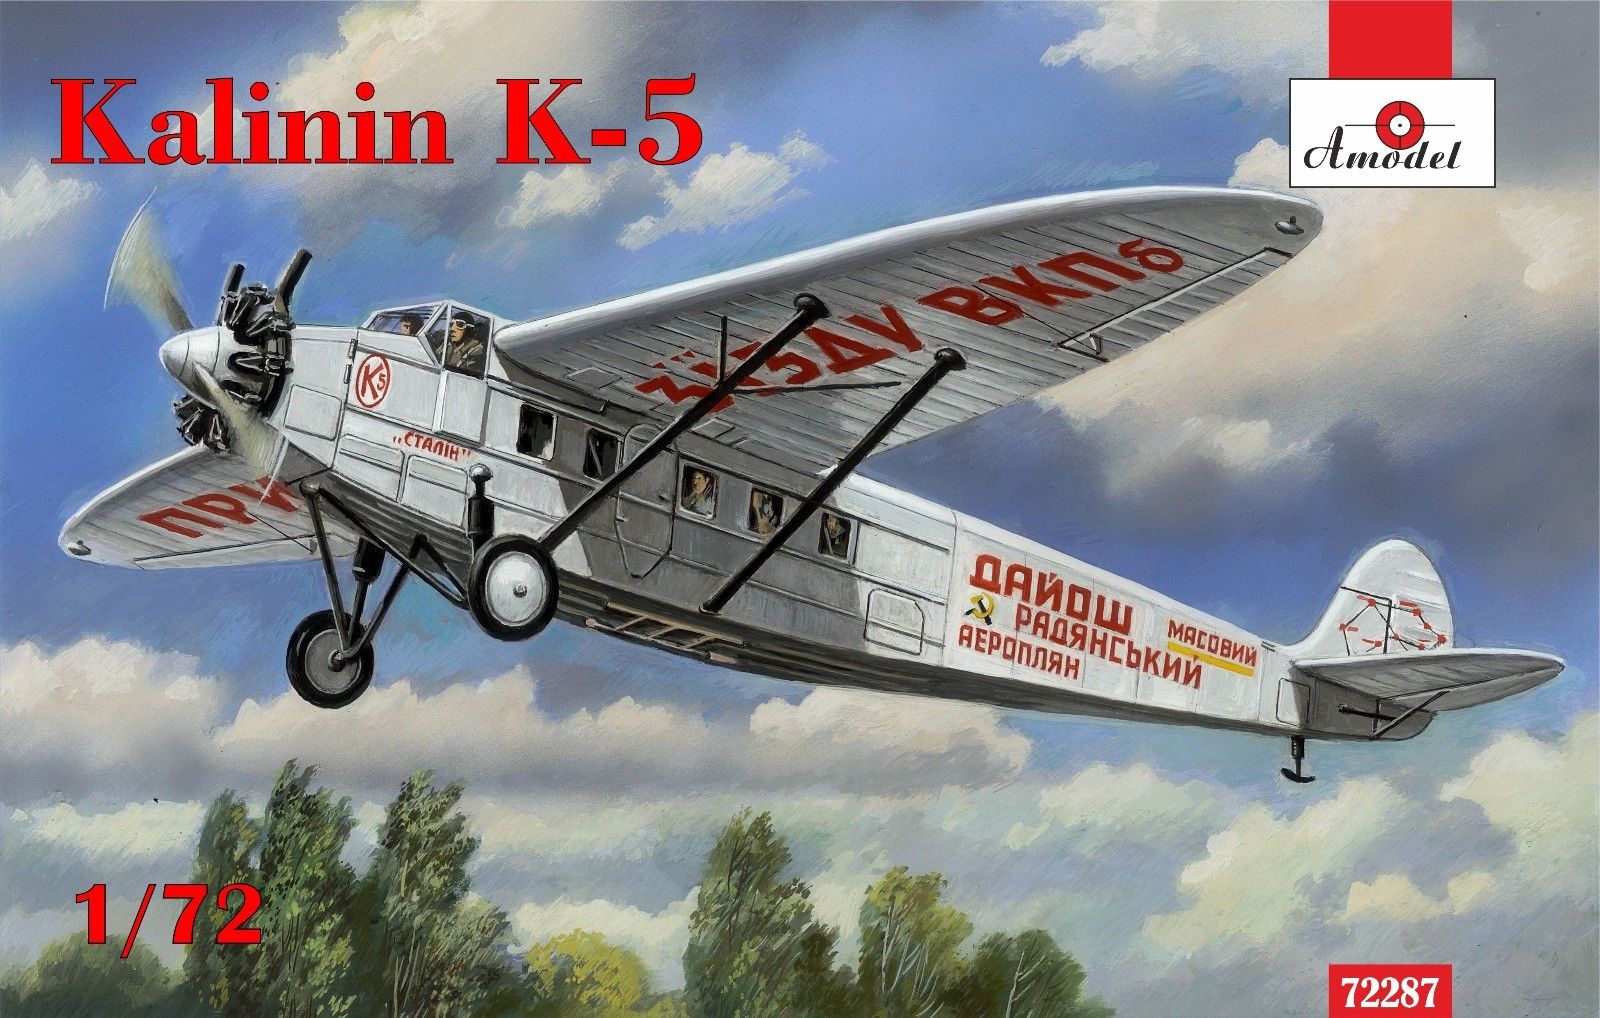 Kalinin K-5 (M-22) 